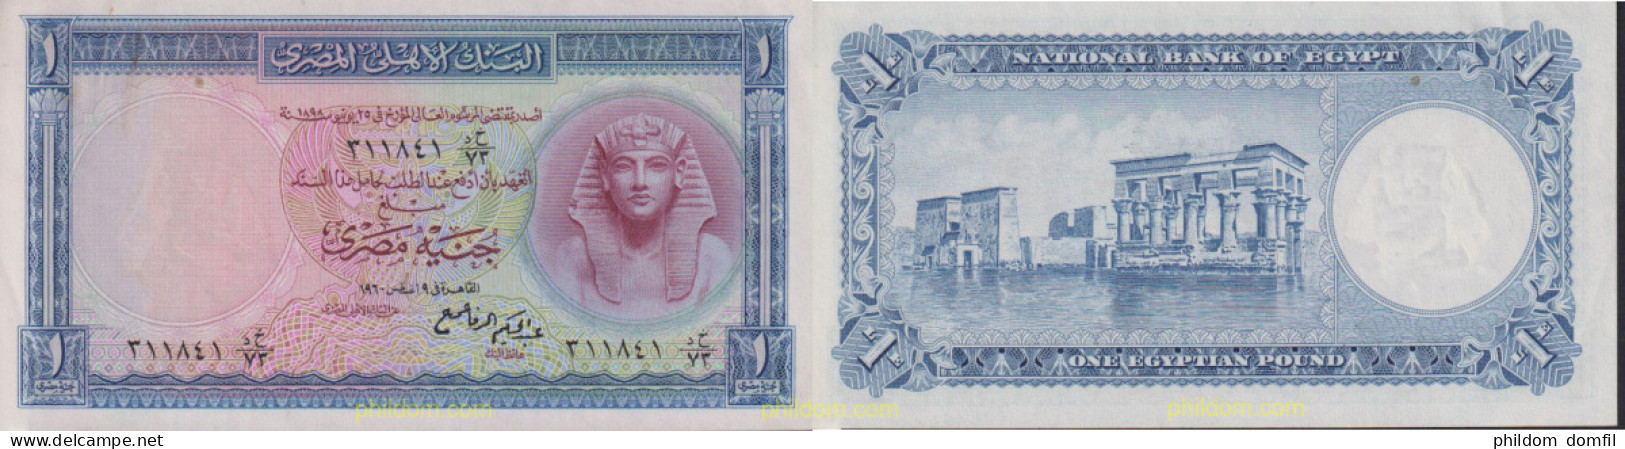 1683 EGIPTO 1952 EGYPT 1 POUND 1952-60 PICK 30 - Egypt